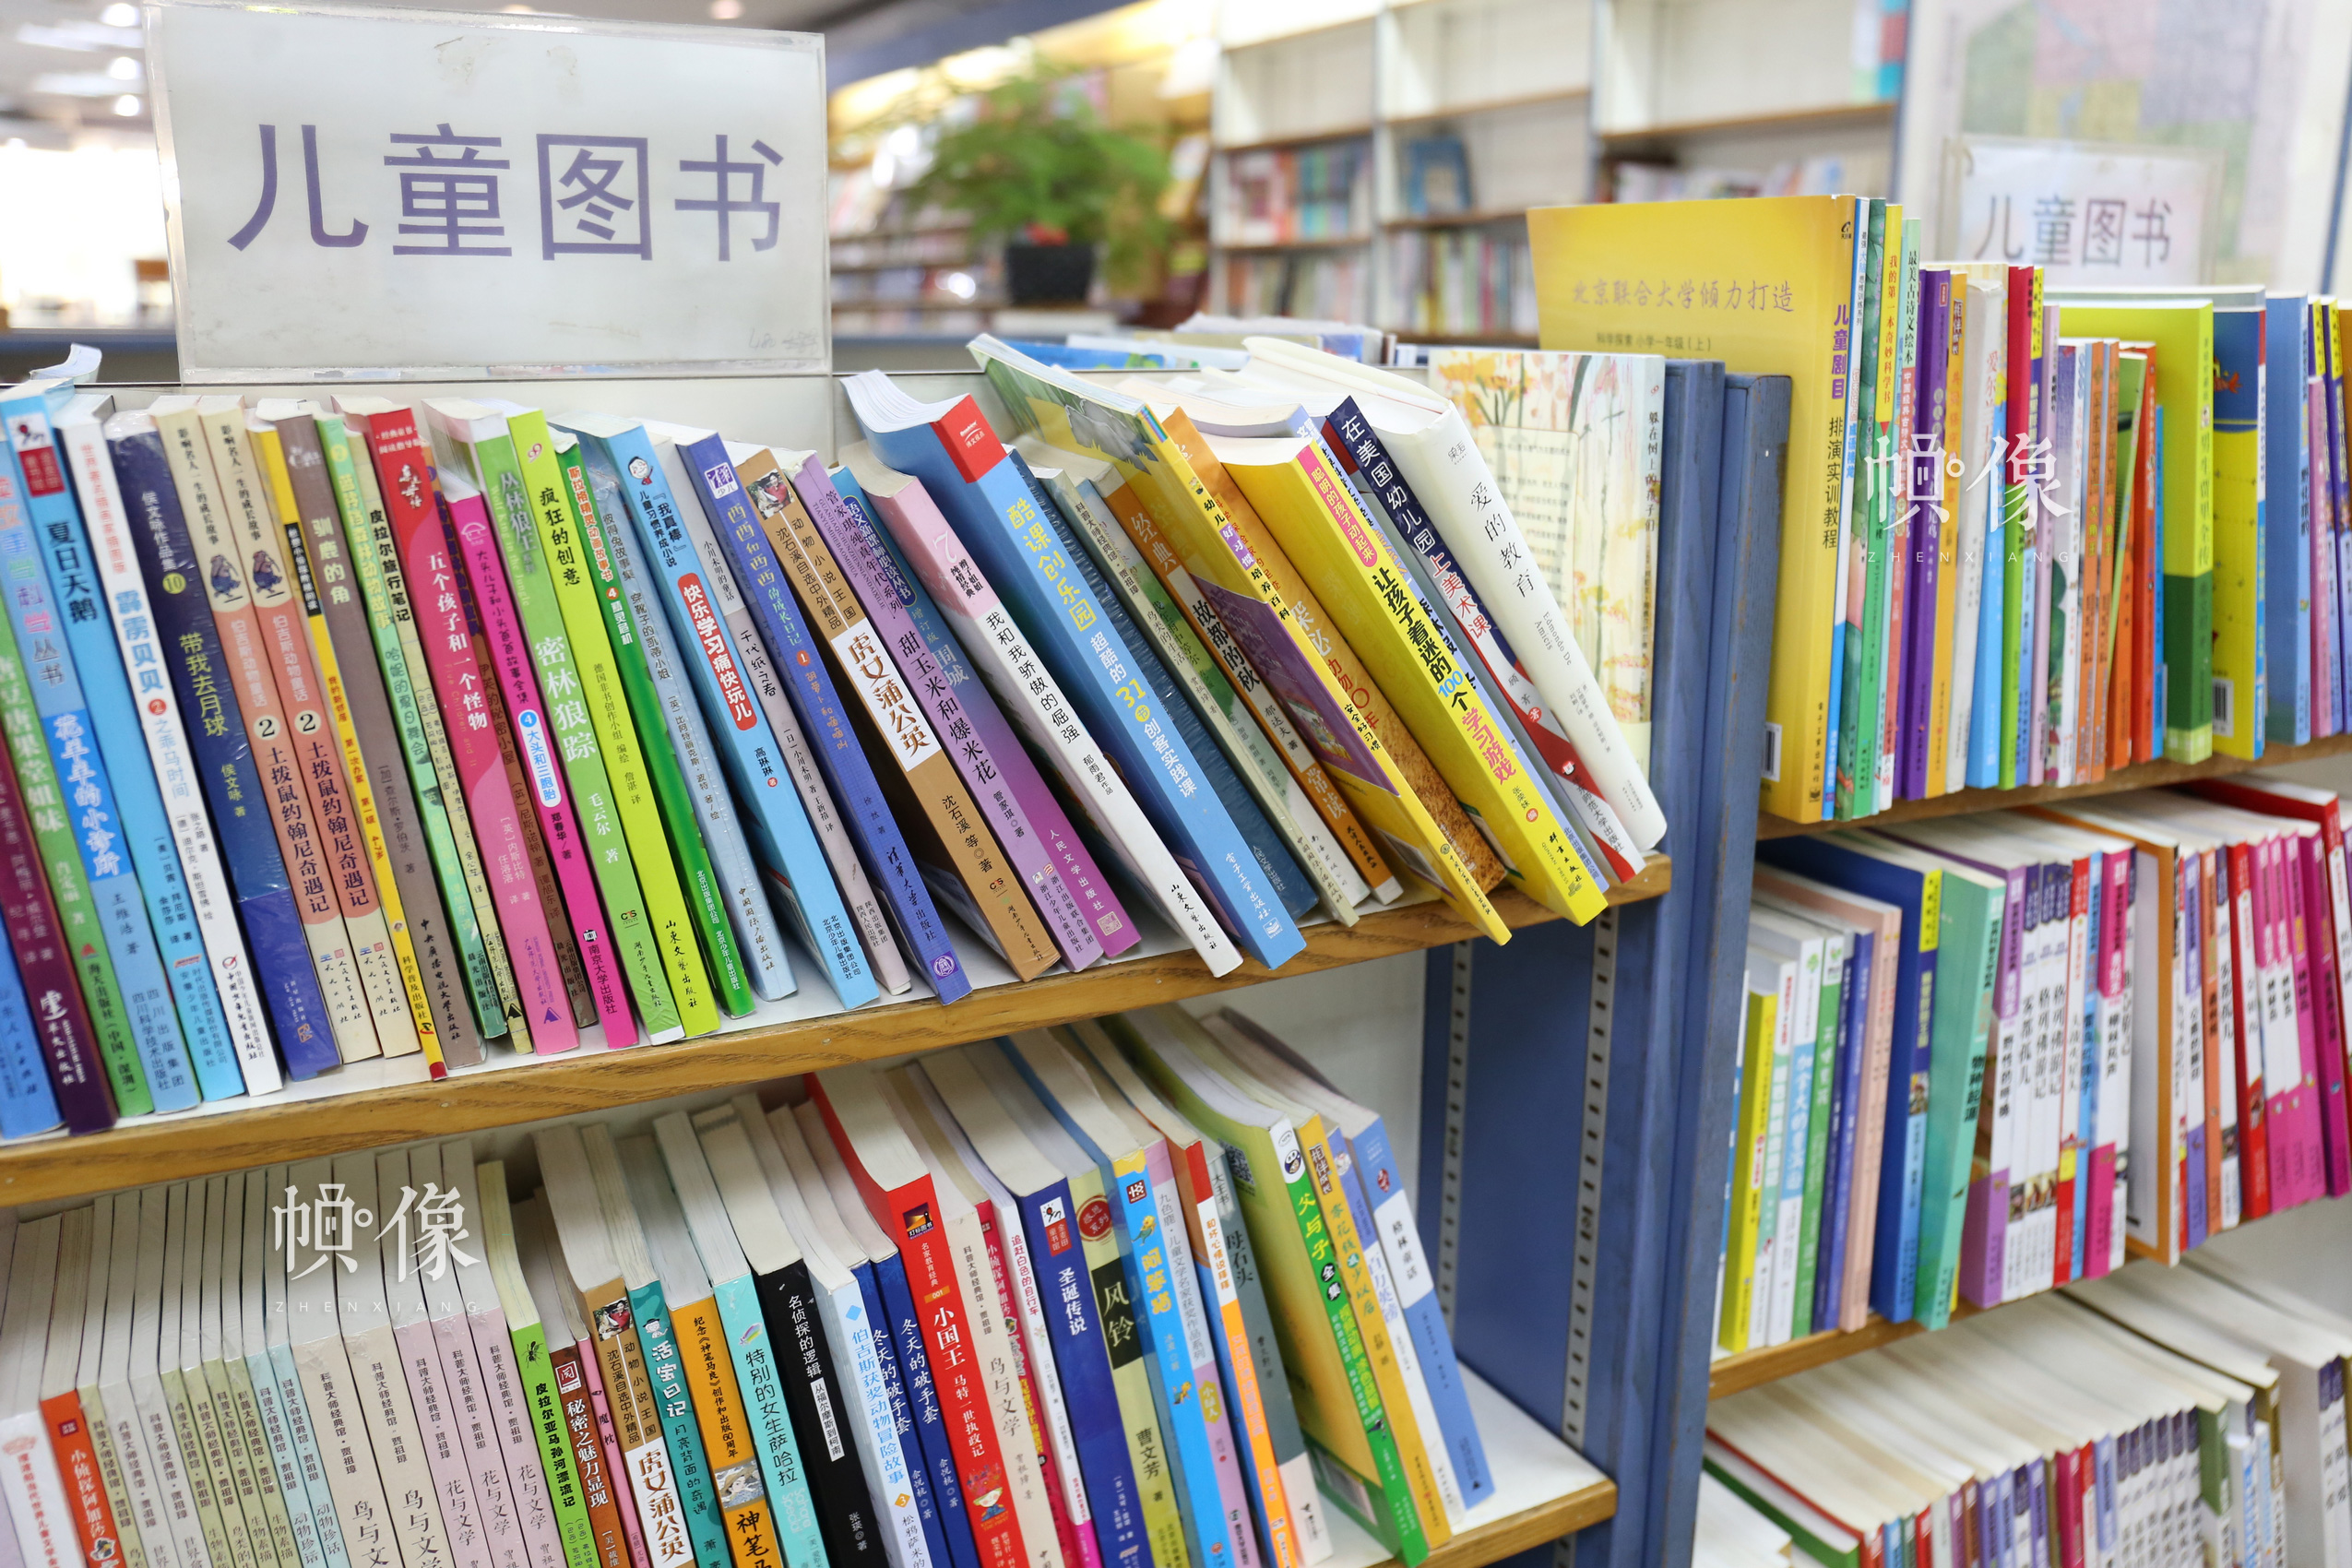 图为北京三联书店美术馆店一角陈列的儿童图书 中国网记者 赵超 摄